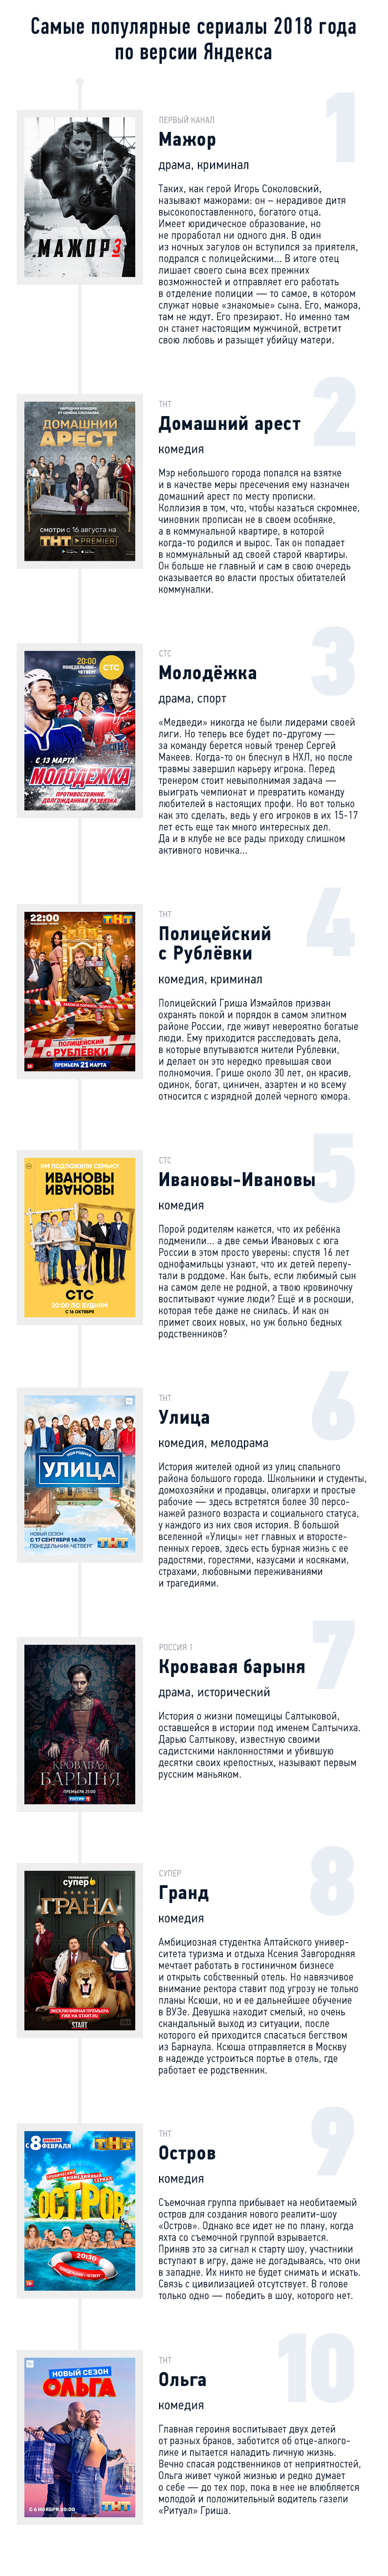 Яндекс сериалы 2018